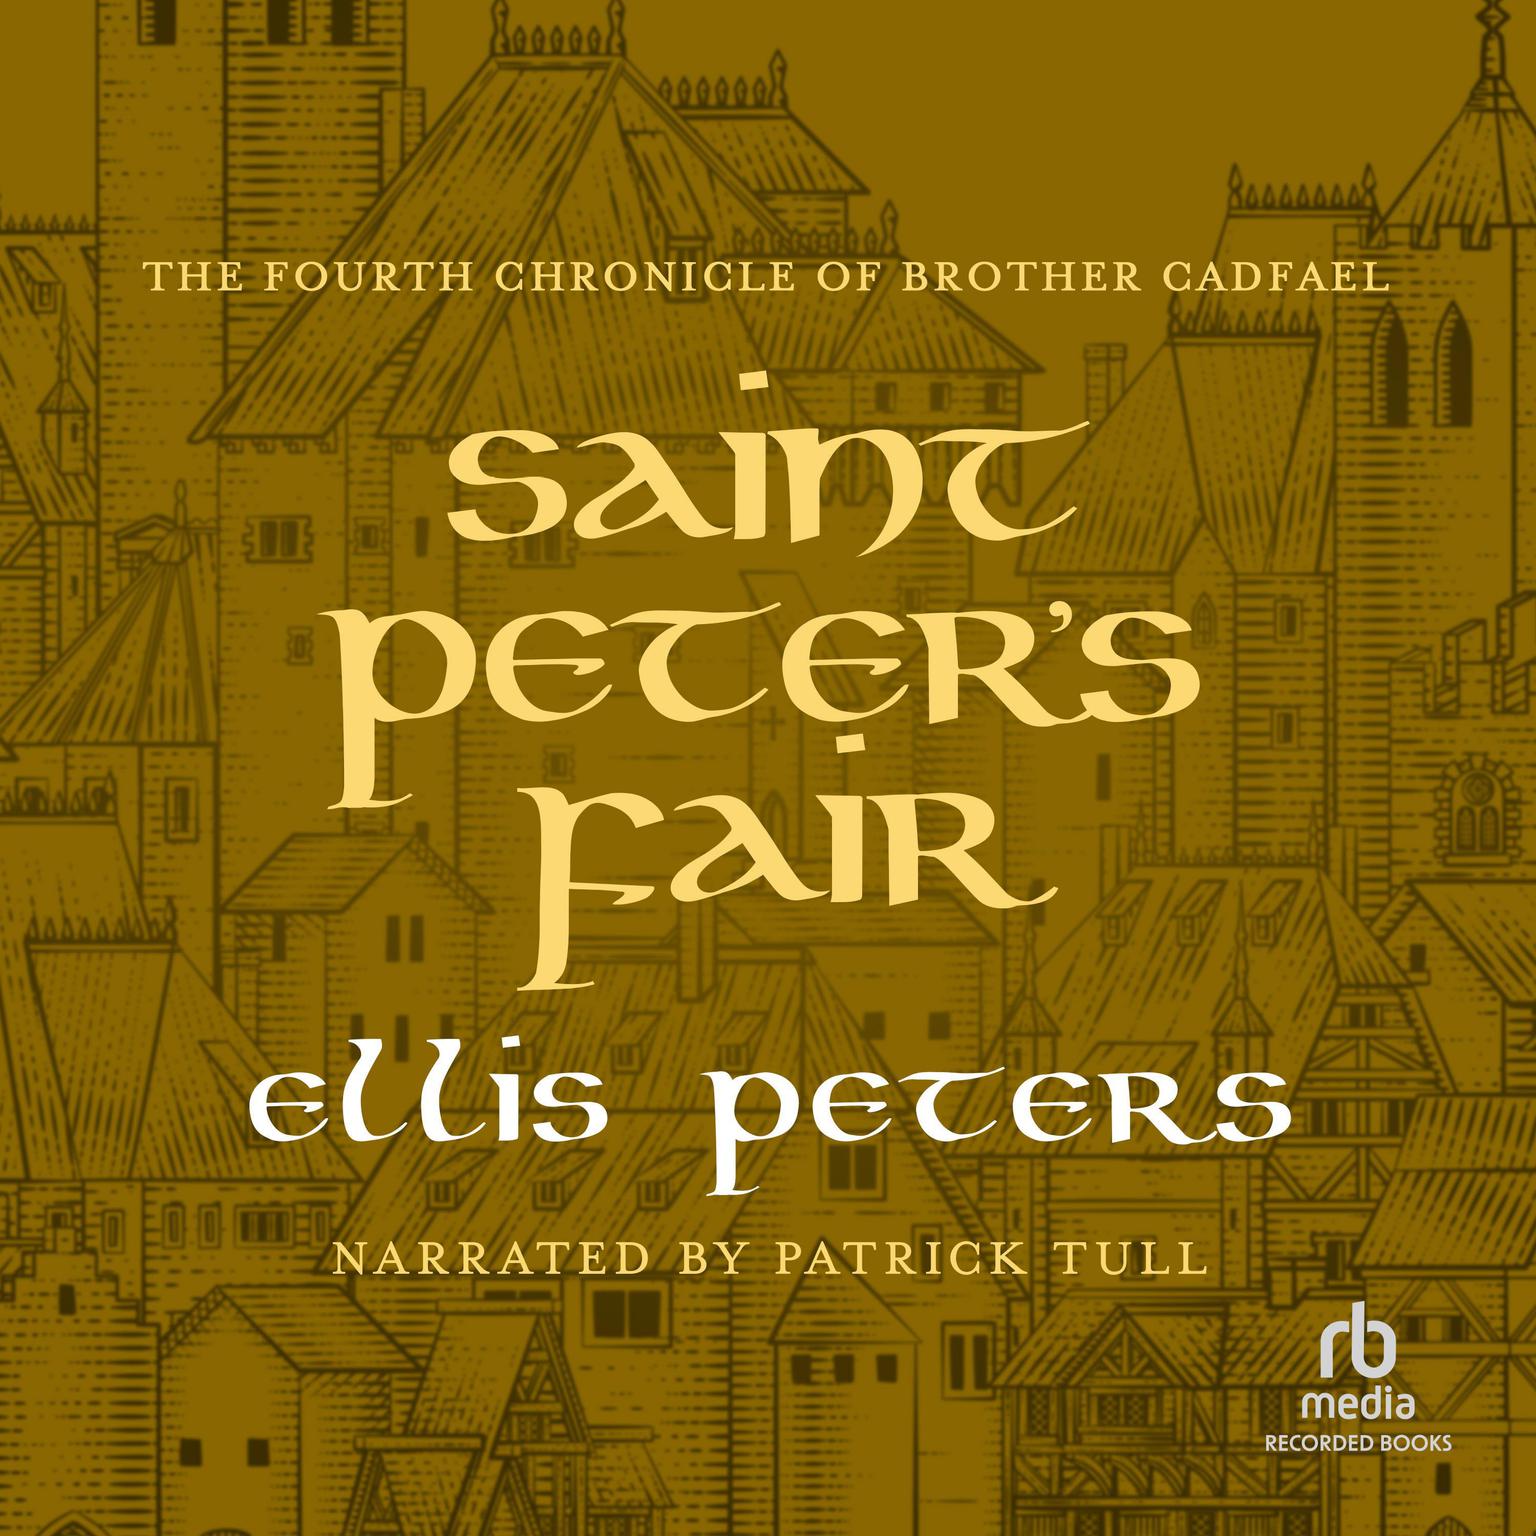 St. Peters Fair Audiobook, by Ellis Peters